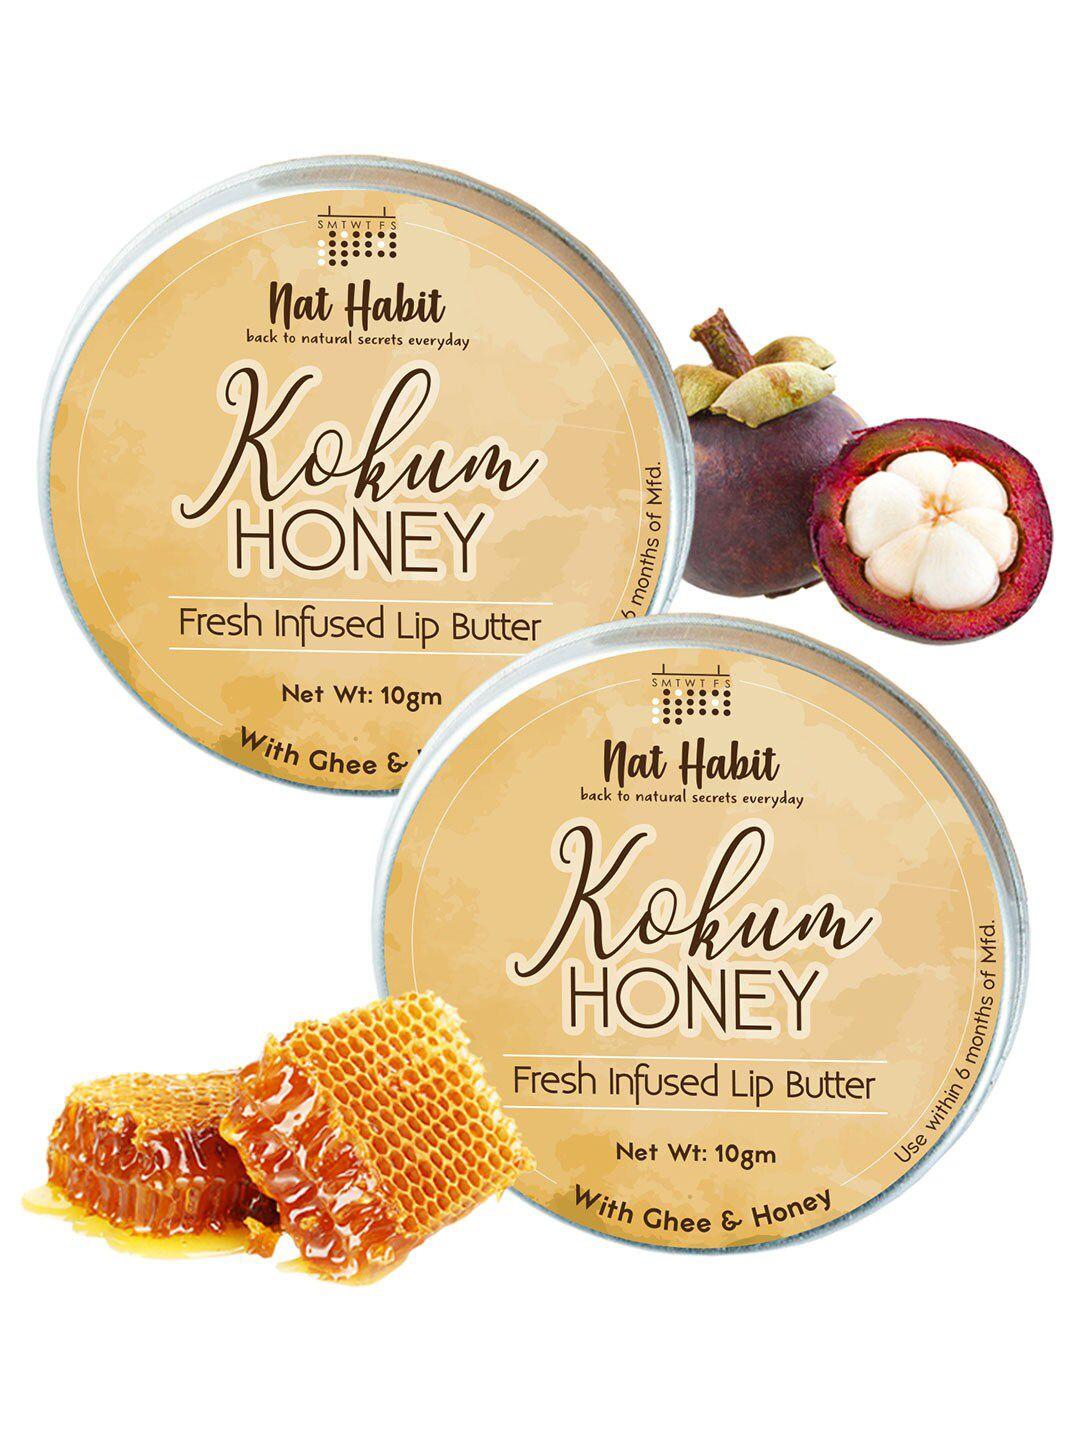 nat habit set of 2 kokum honey fresh infused lip butter with ghee & honey - 10 g each